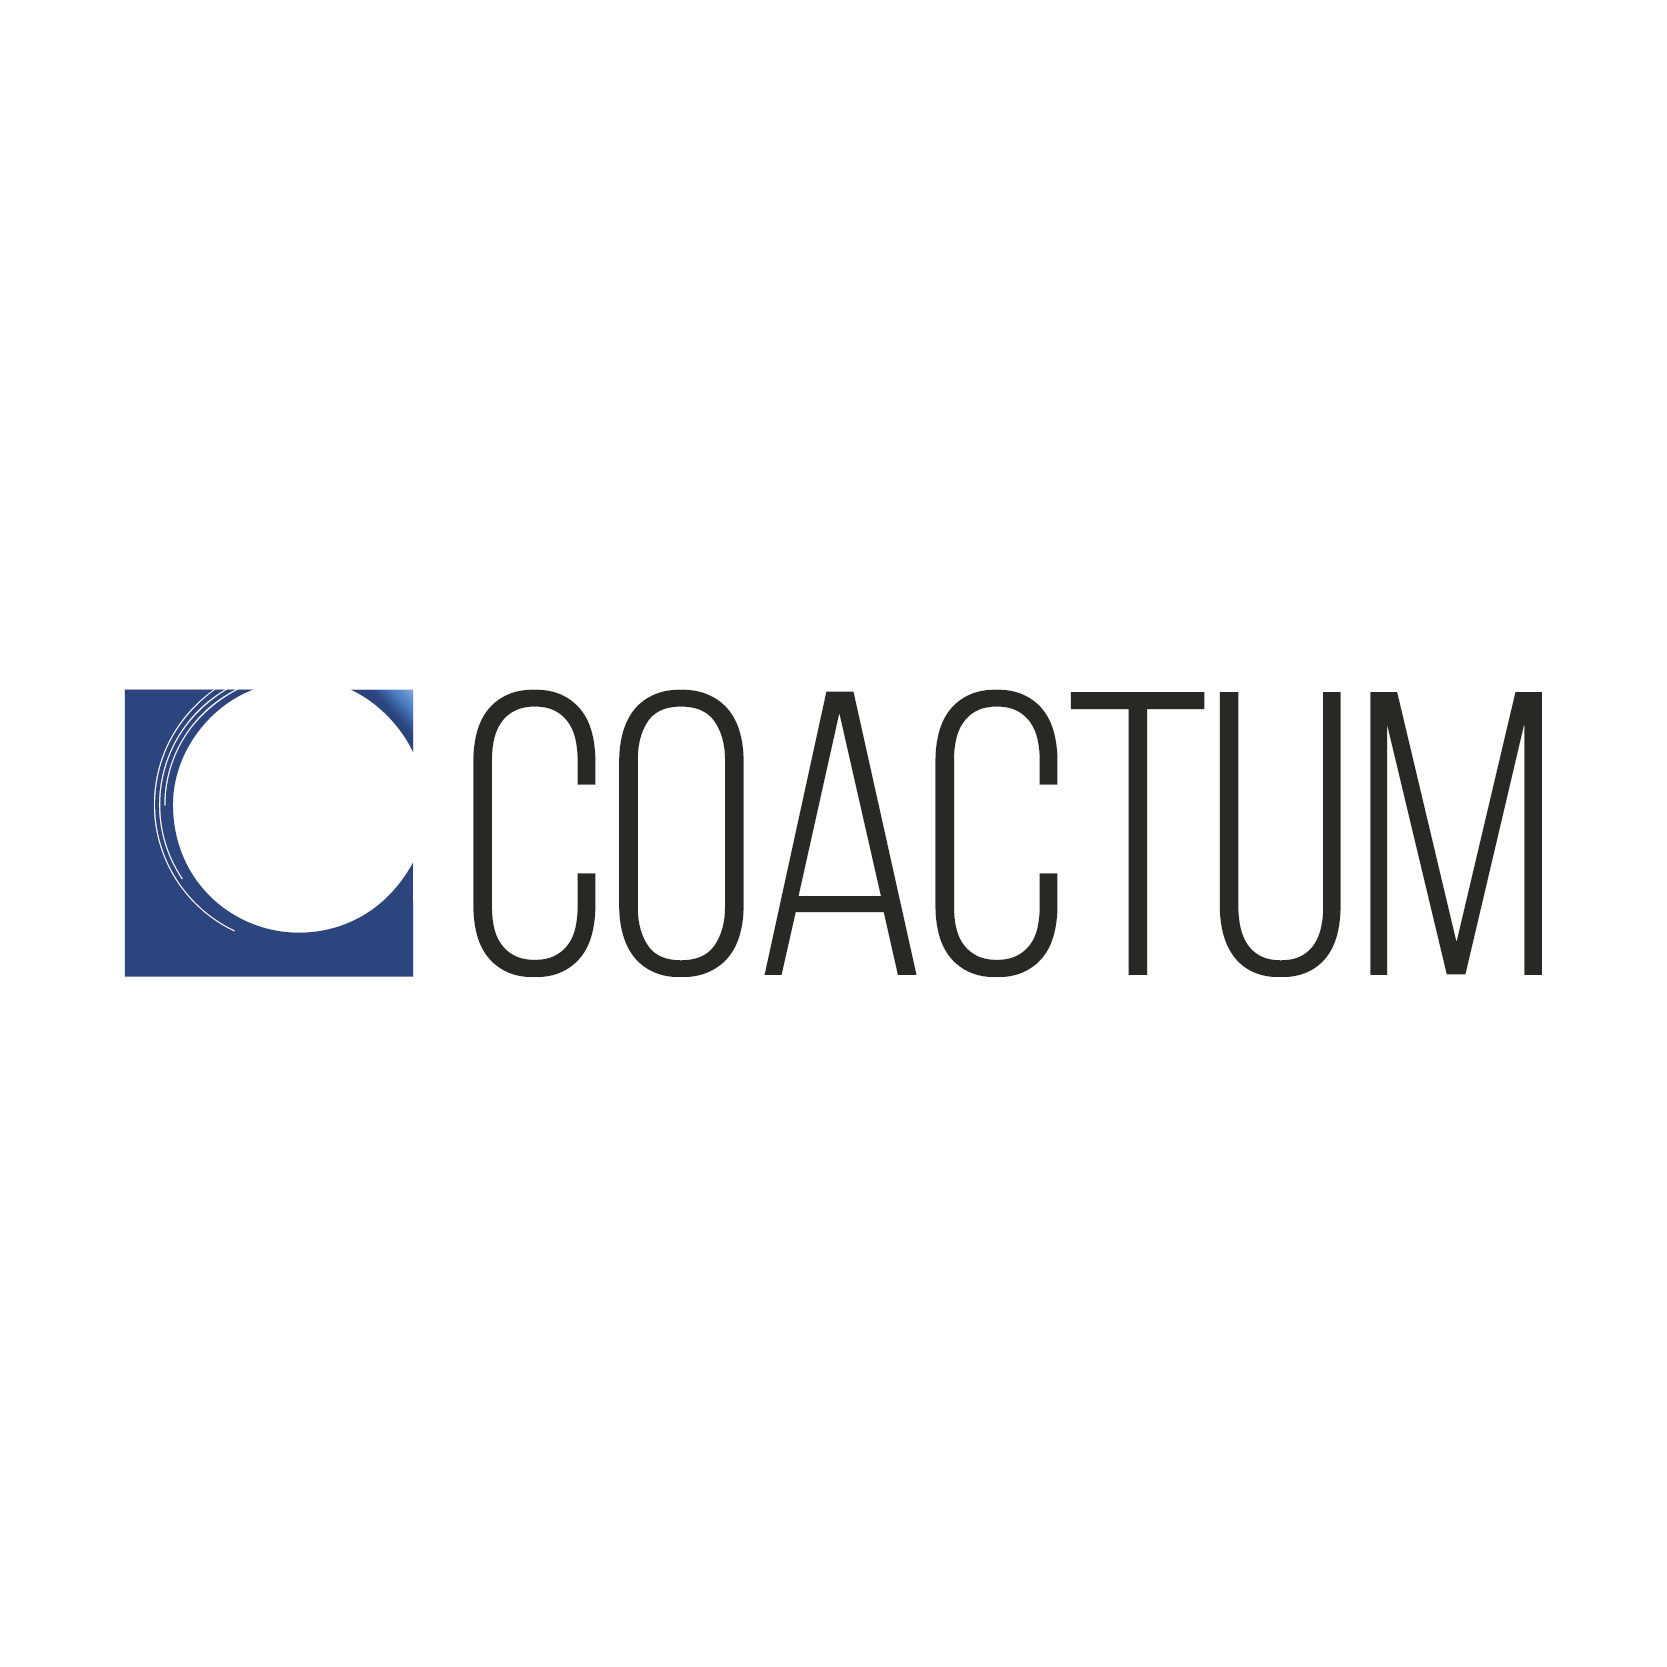 Coactum